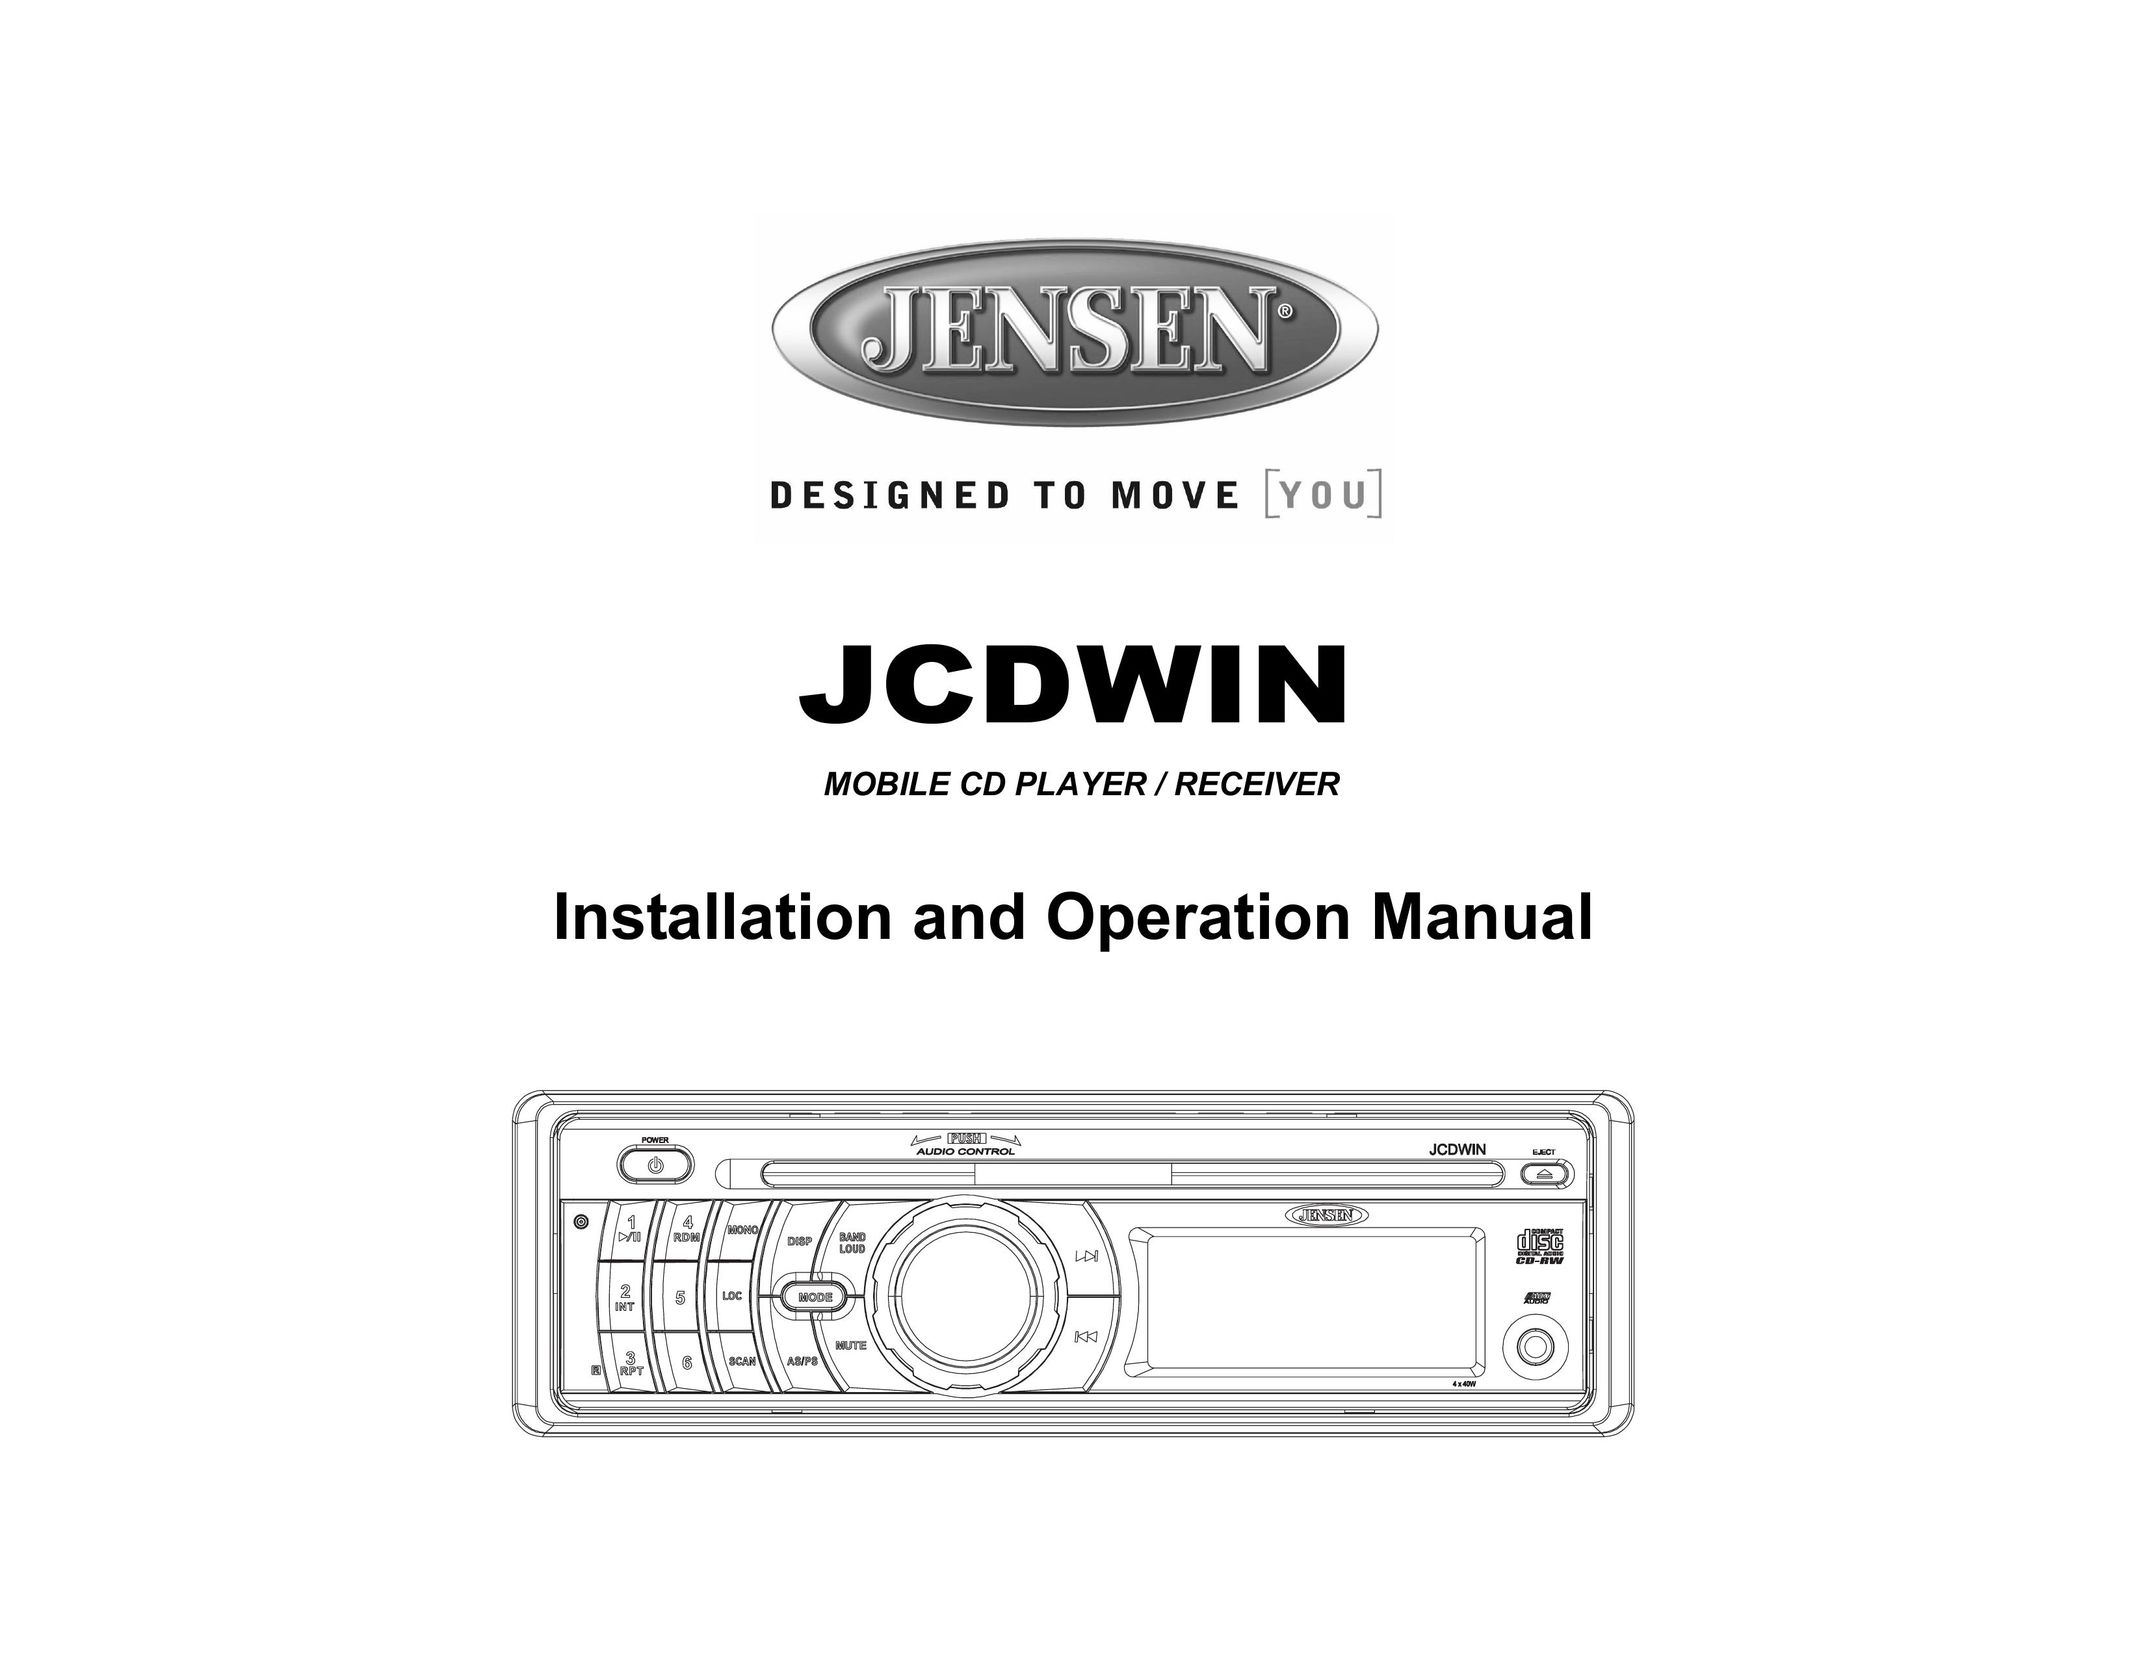 Jensen JCDWIN Portable CD Player User Manual